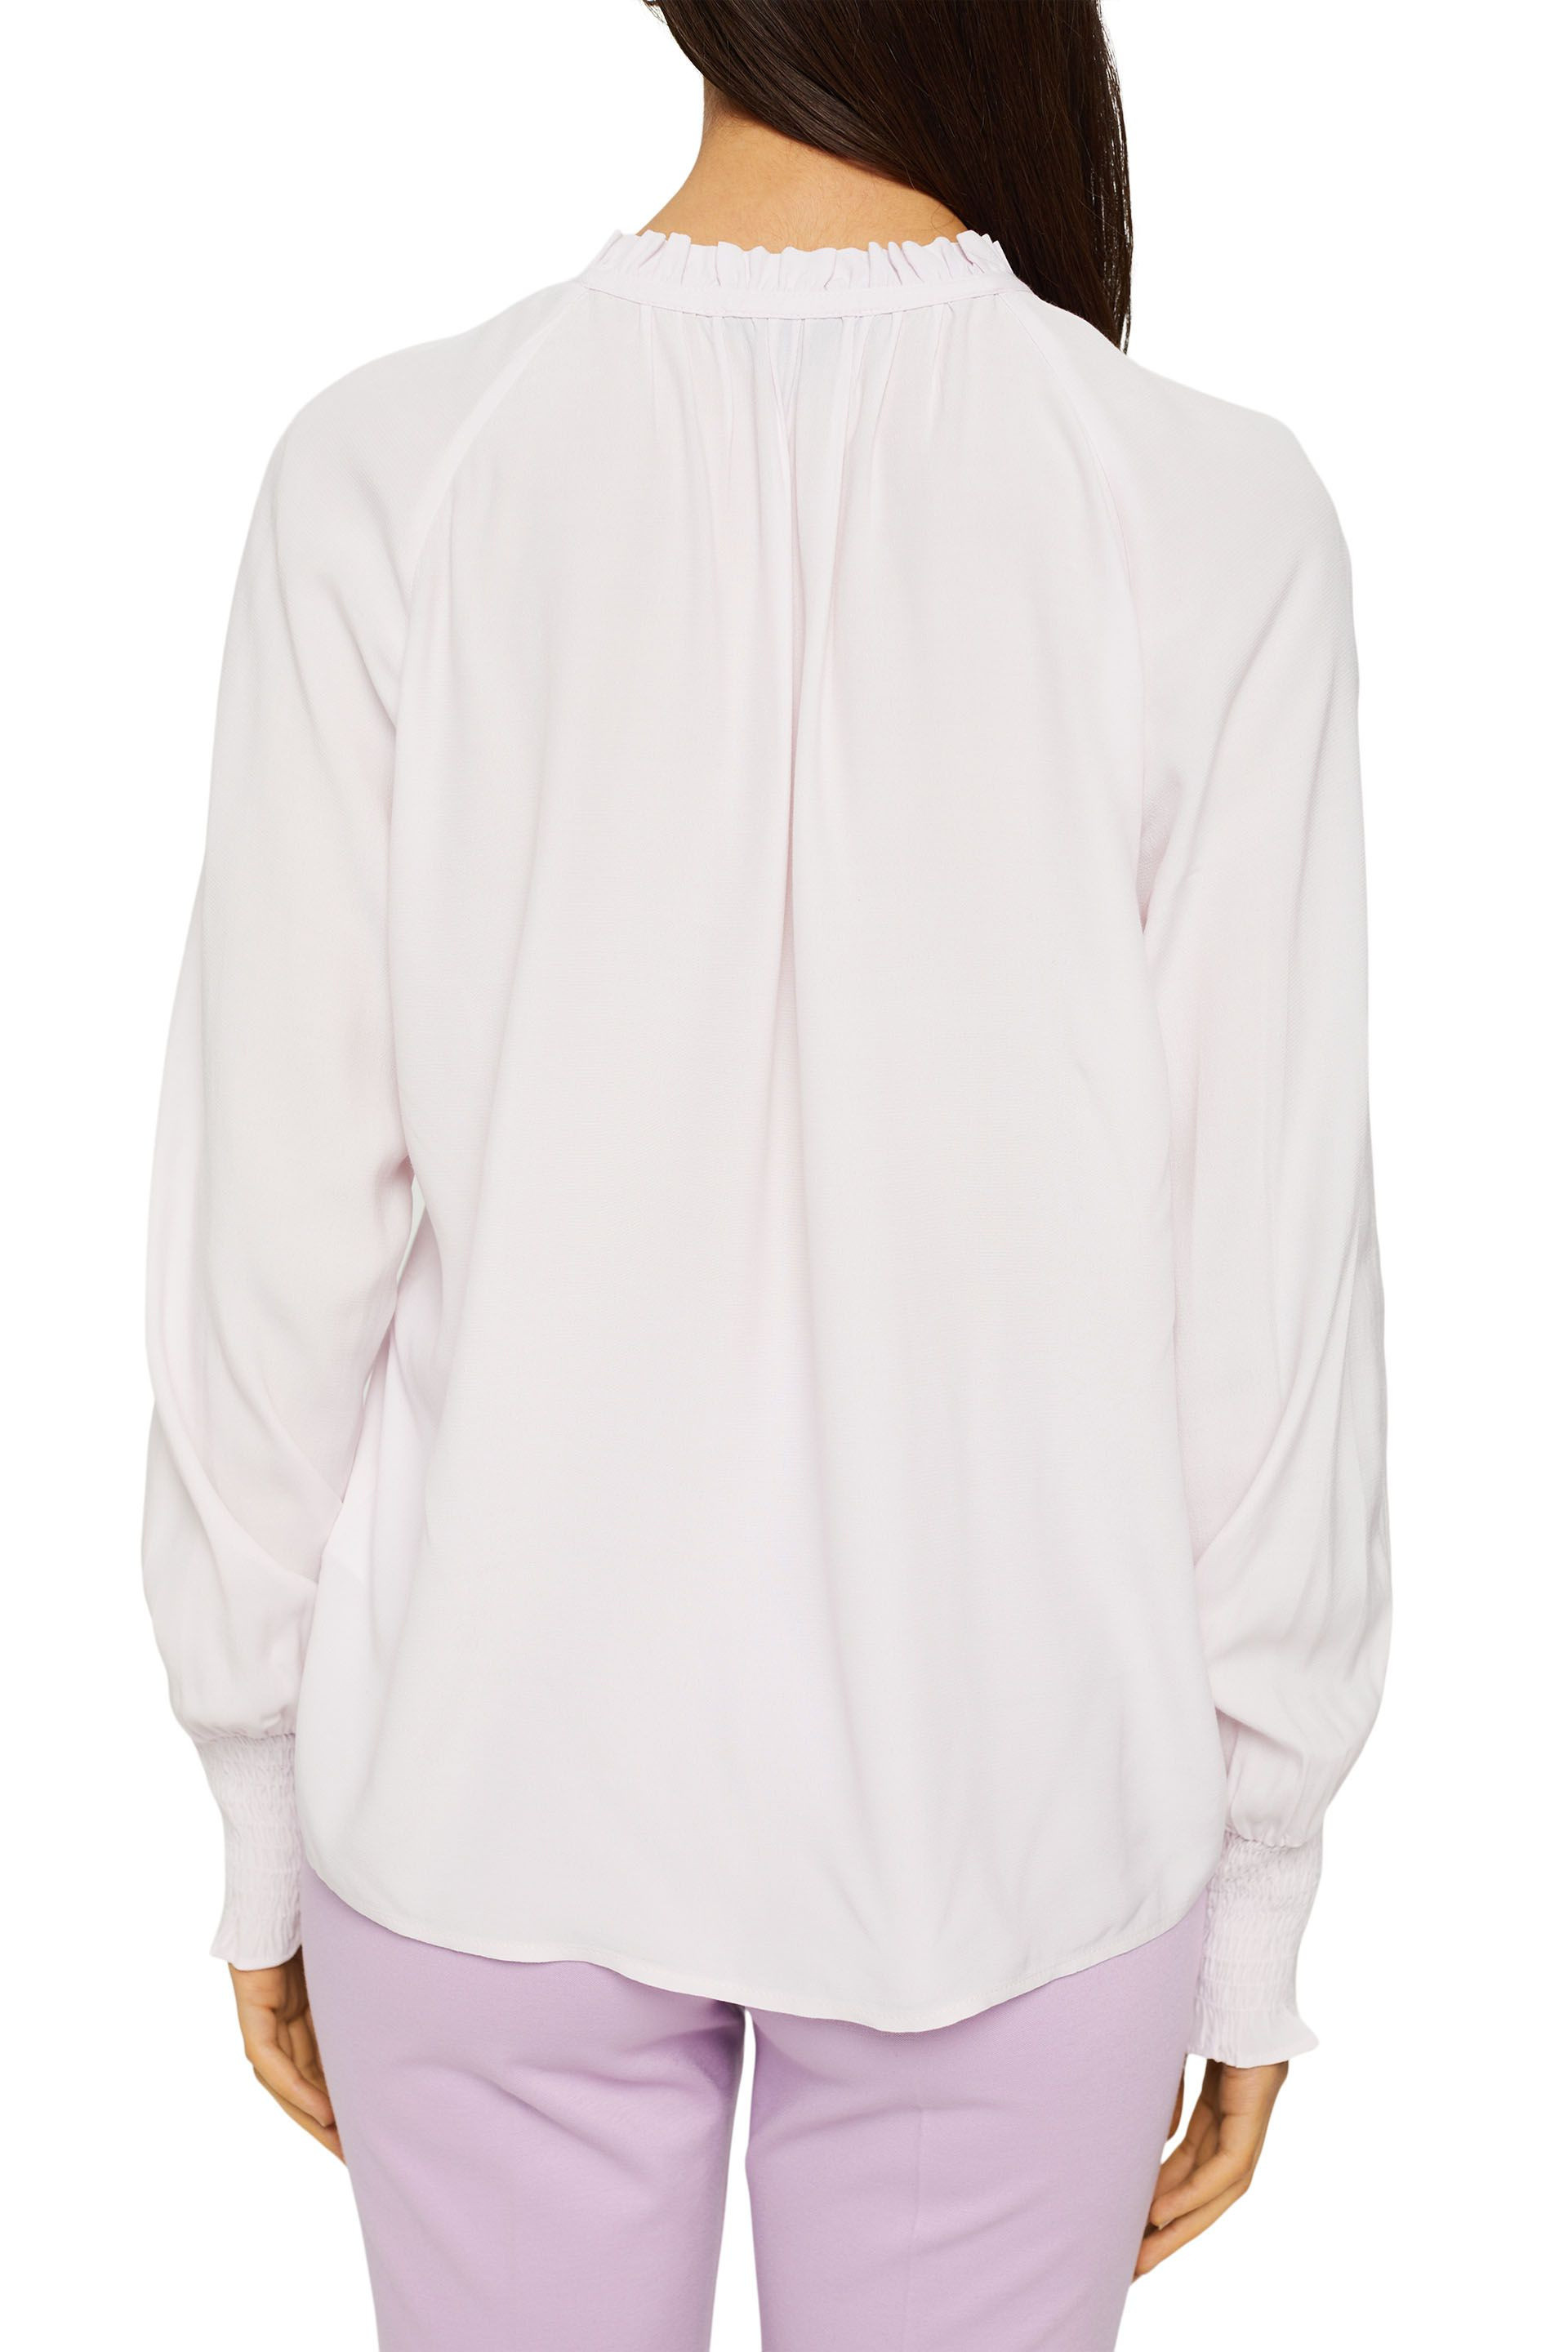 Camicia con ruches e arricciatura, Rosa chiaro, large image number 2